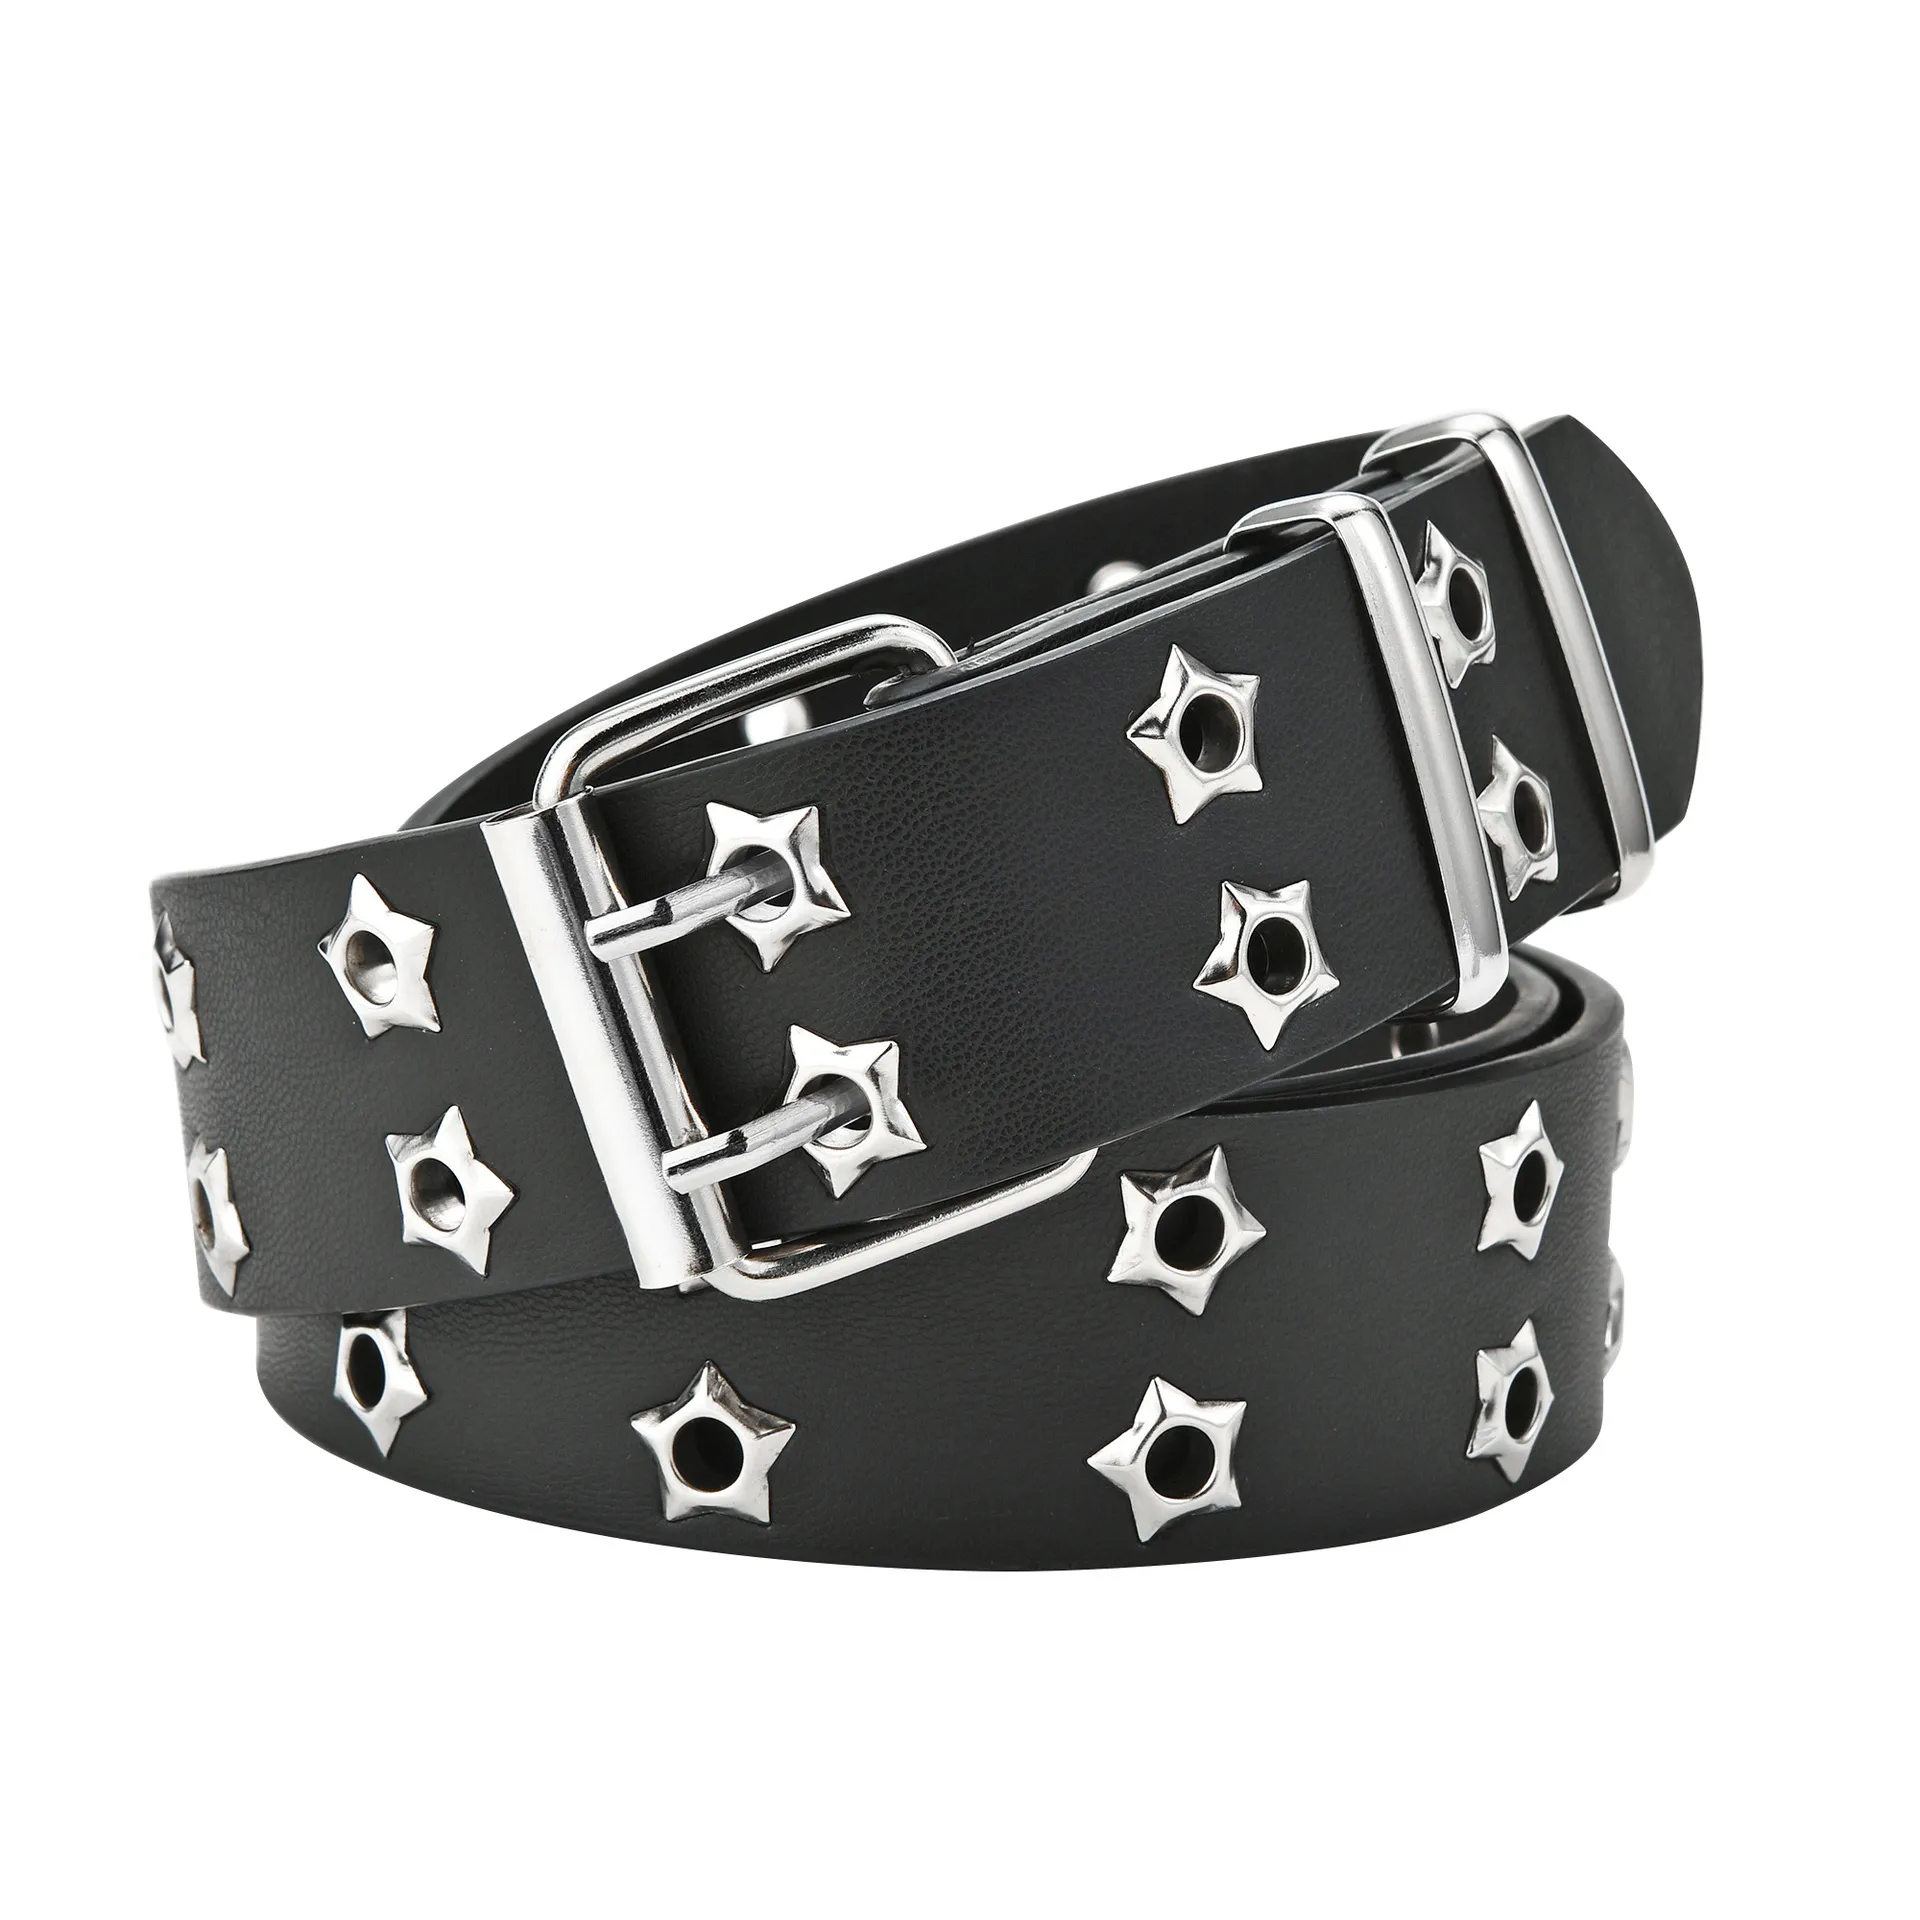 NUOVA Cintura con rivetto Star Eye Stile Goth Fibbia a doppio ardiglione Uomo / donna Moda Casual Stile Puck Cintura in pelle Pu per Jeans Young